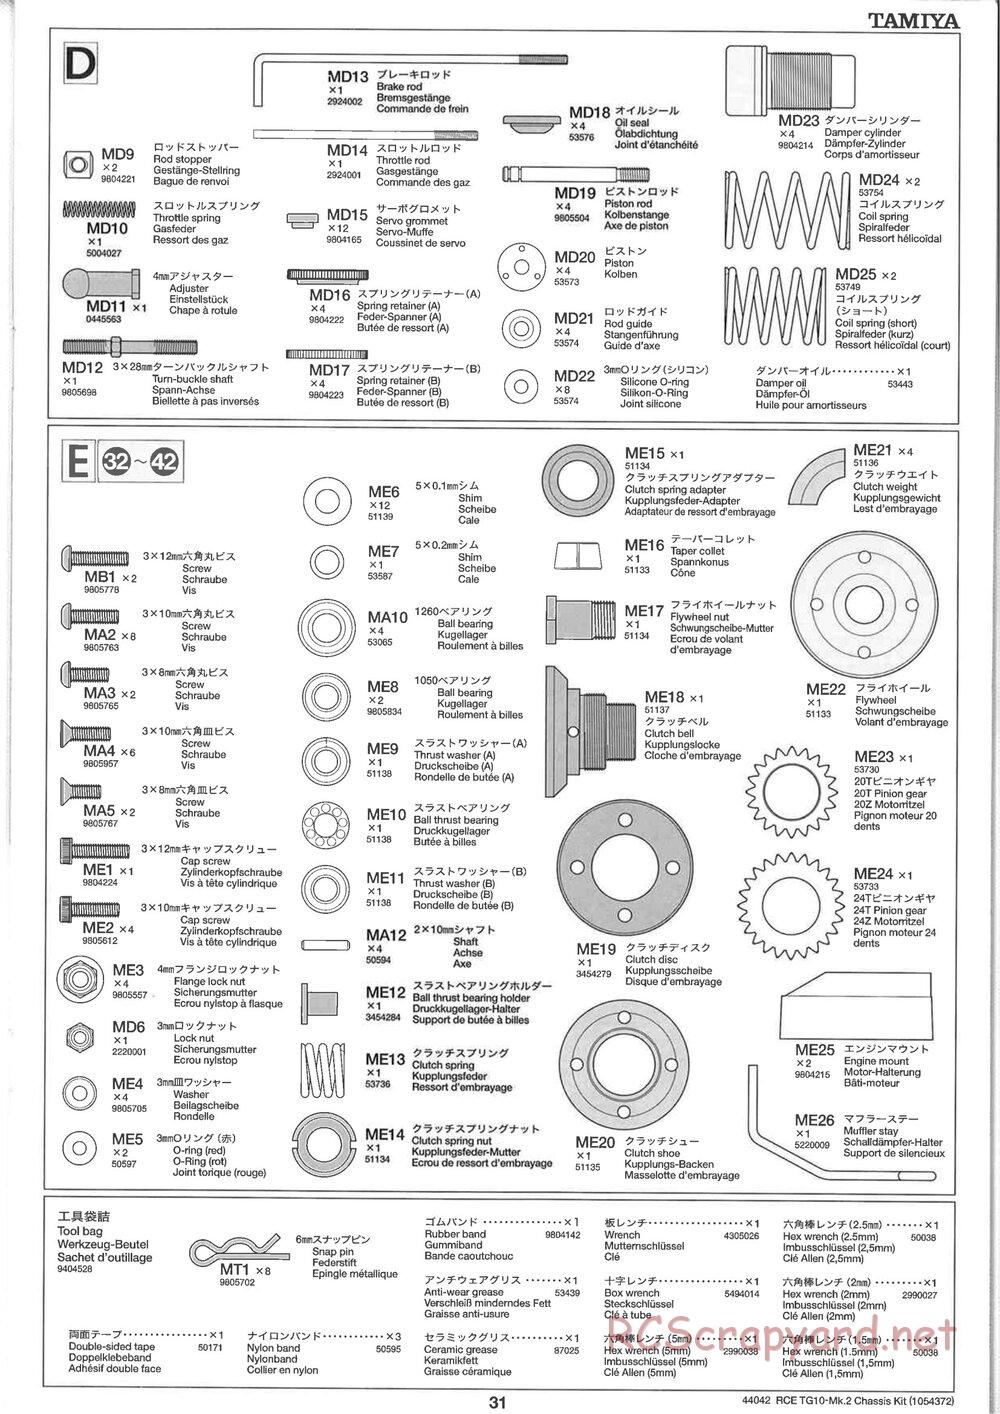 Tamiya - TG10 Mk.2 Chassis - Manual - Page 31